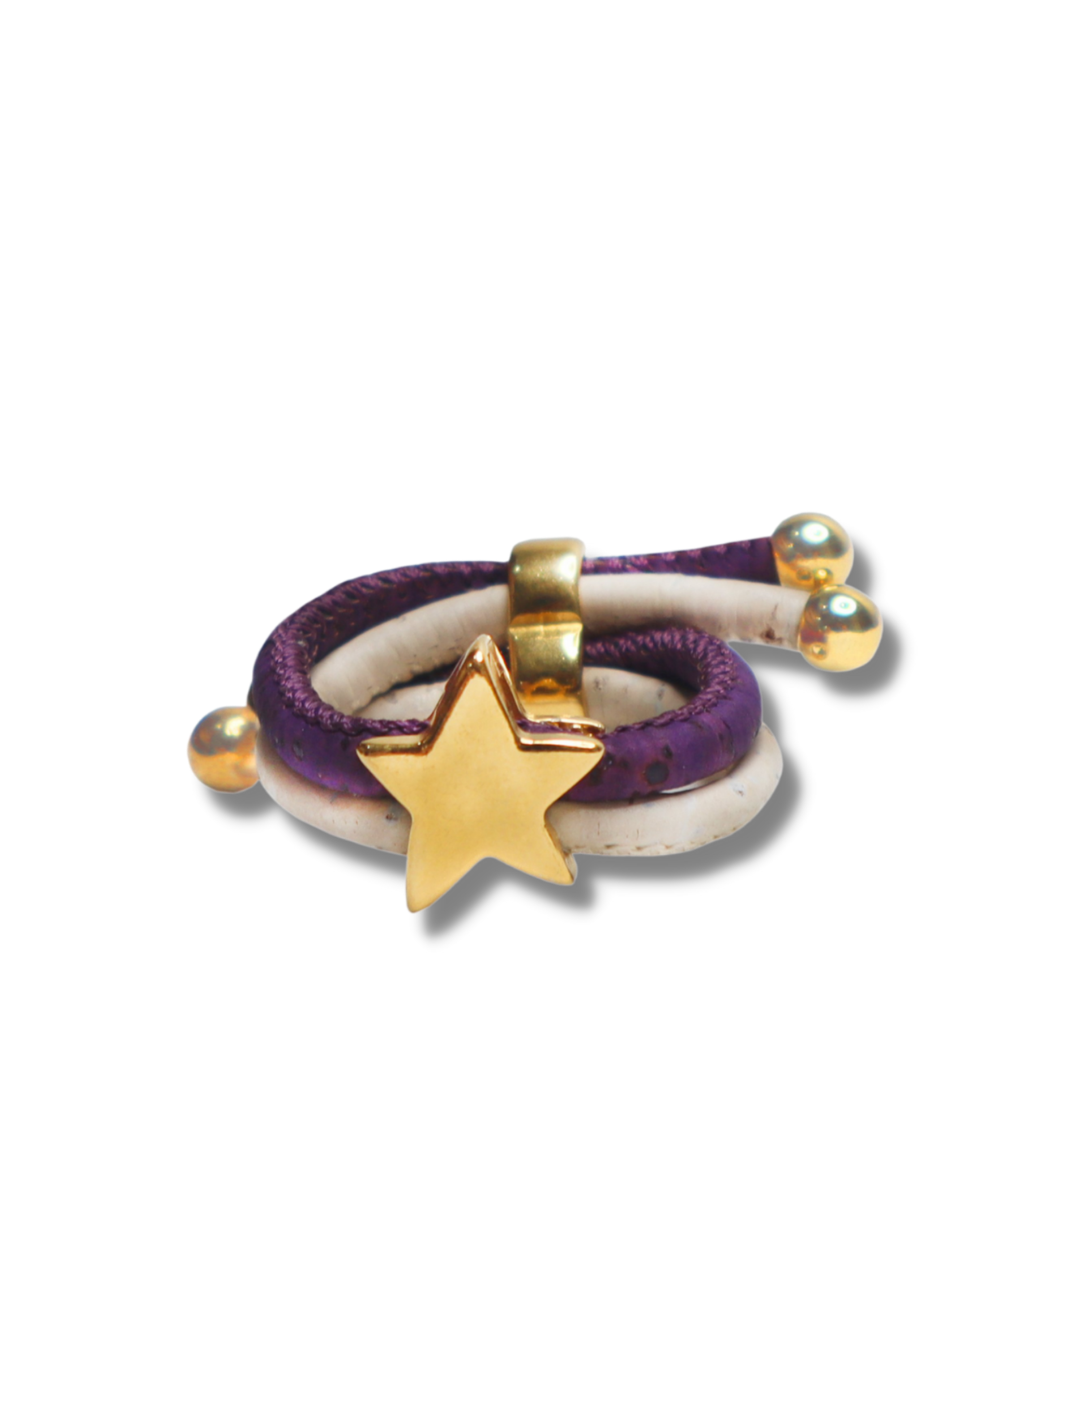 Cork Pentas Star shaped Ring